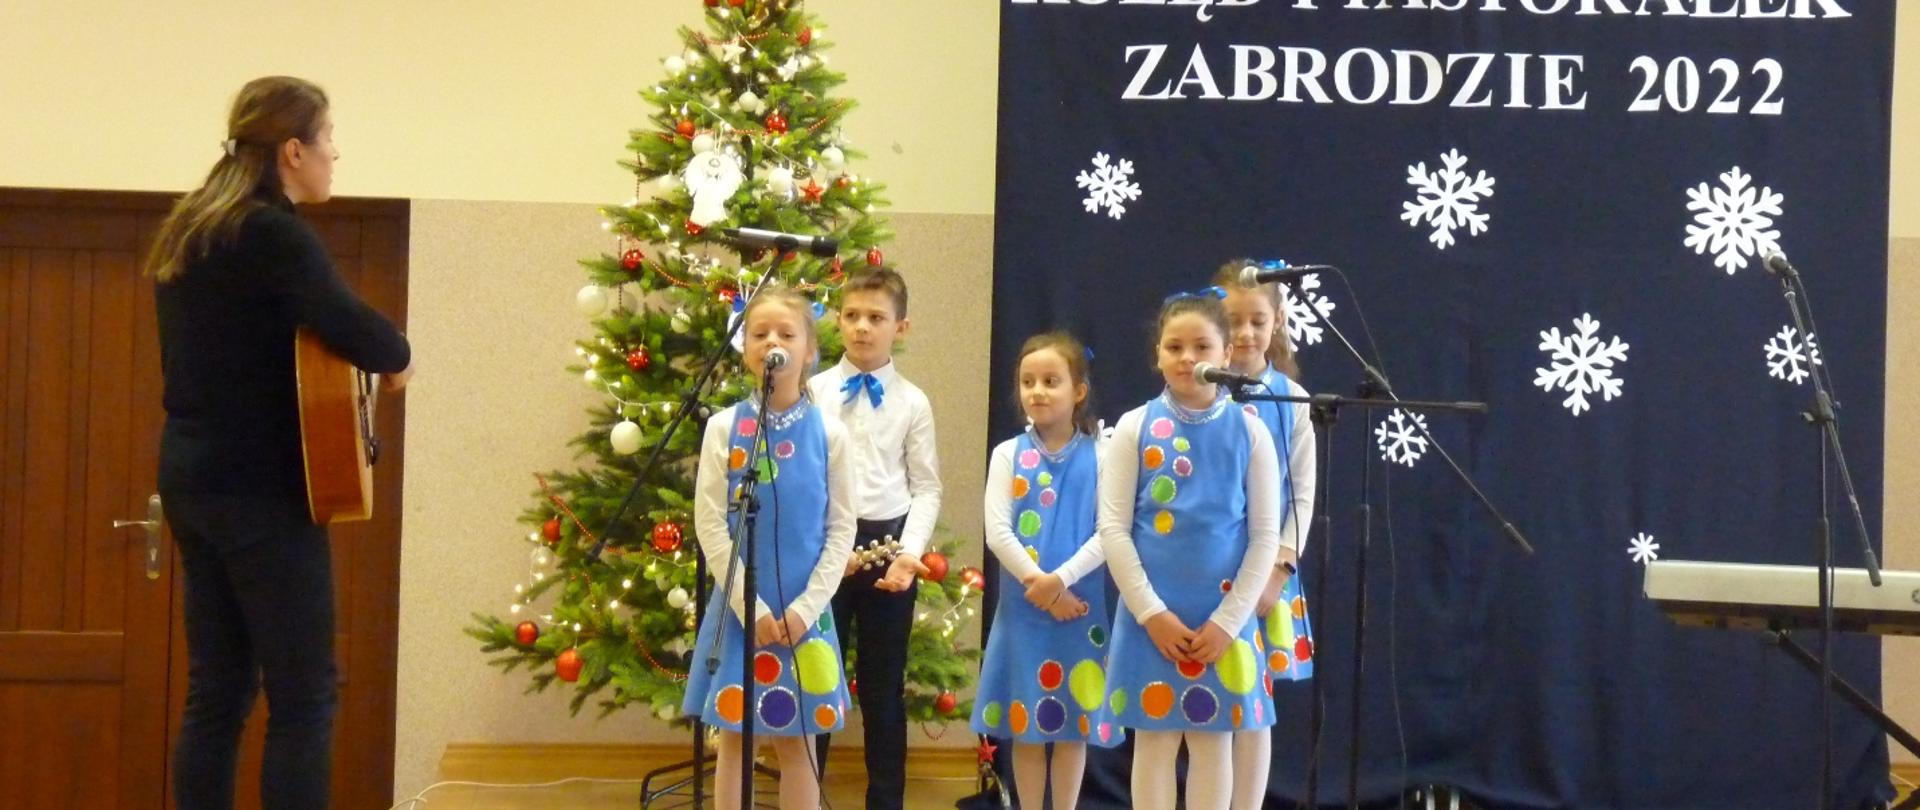 Dzieci ubrane na niebiesko śpiewają na scenie